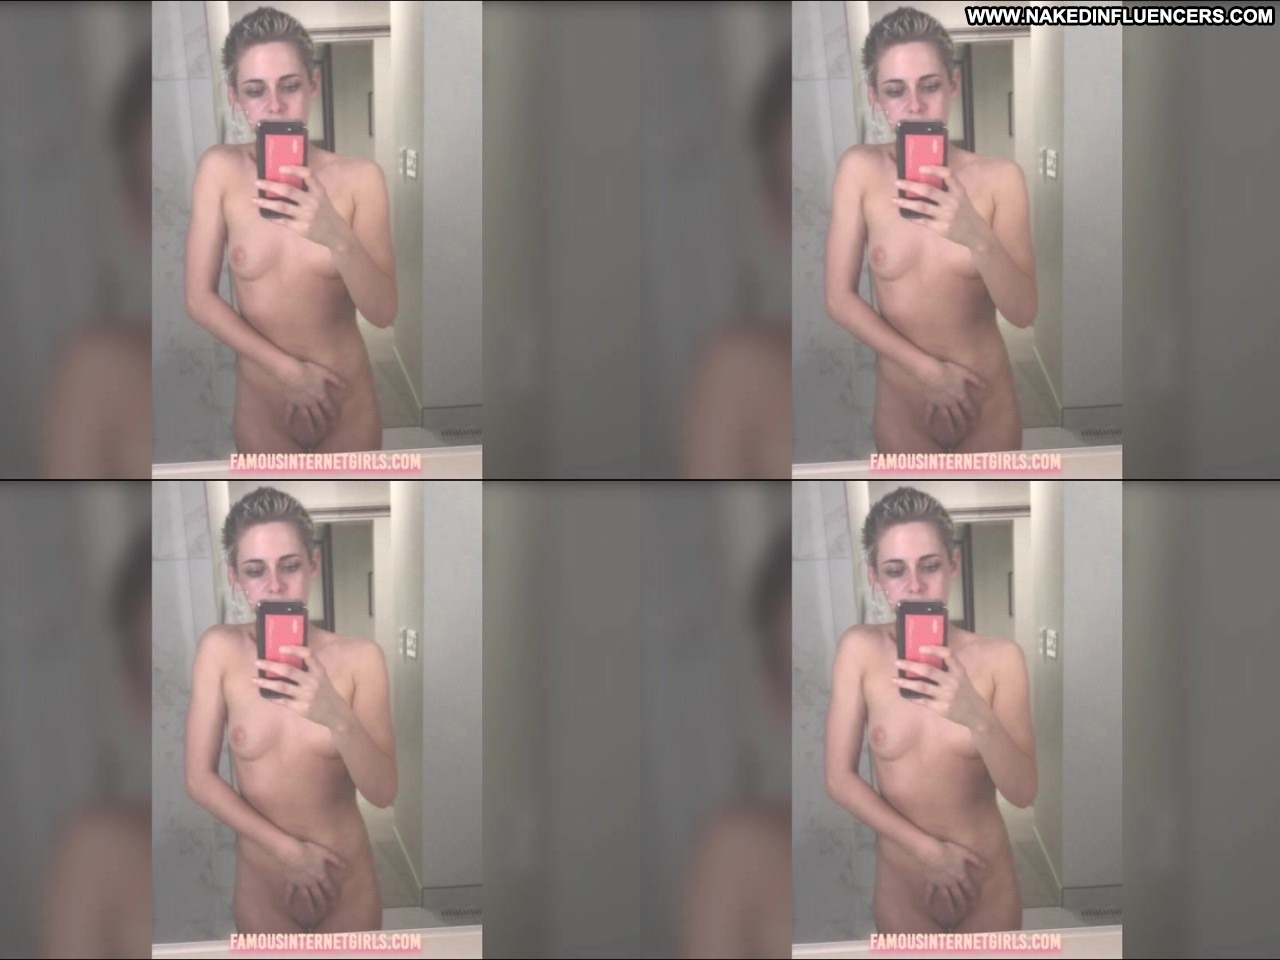 Kristen Stewart Video Leak Influencer Nude Selfies Nude Selfies Straight hq photo